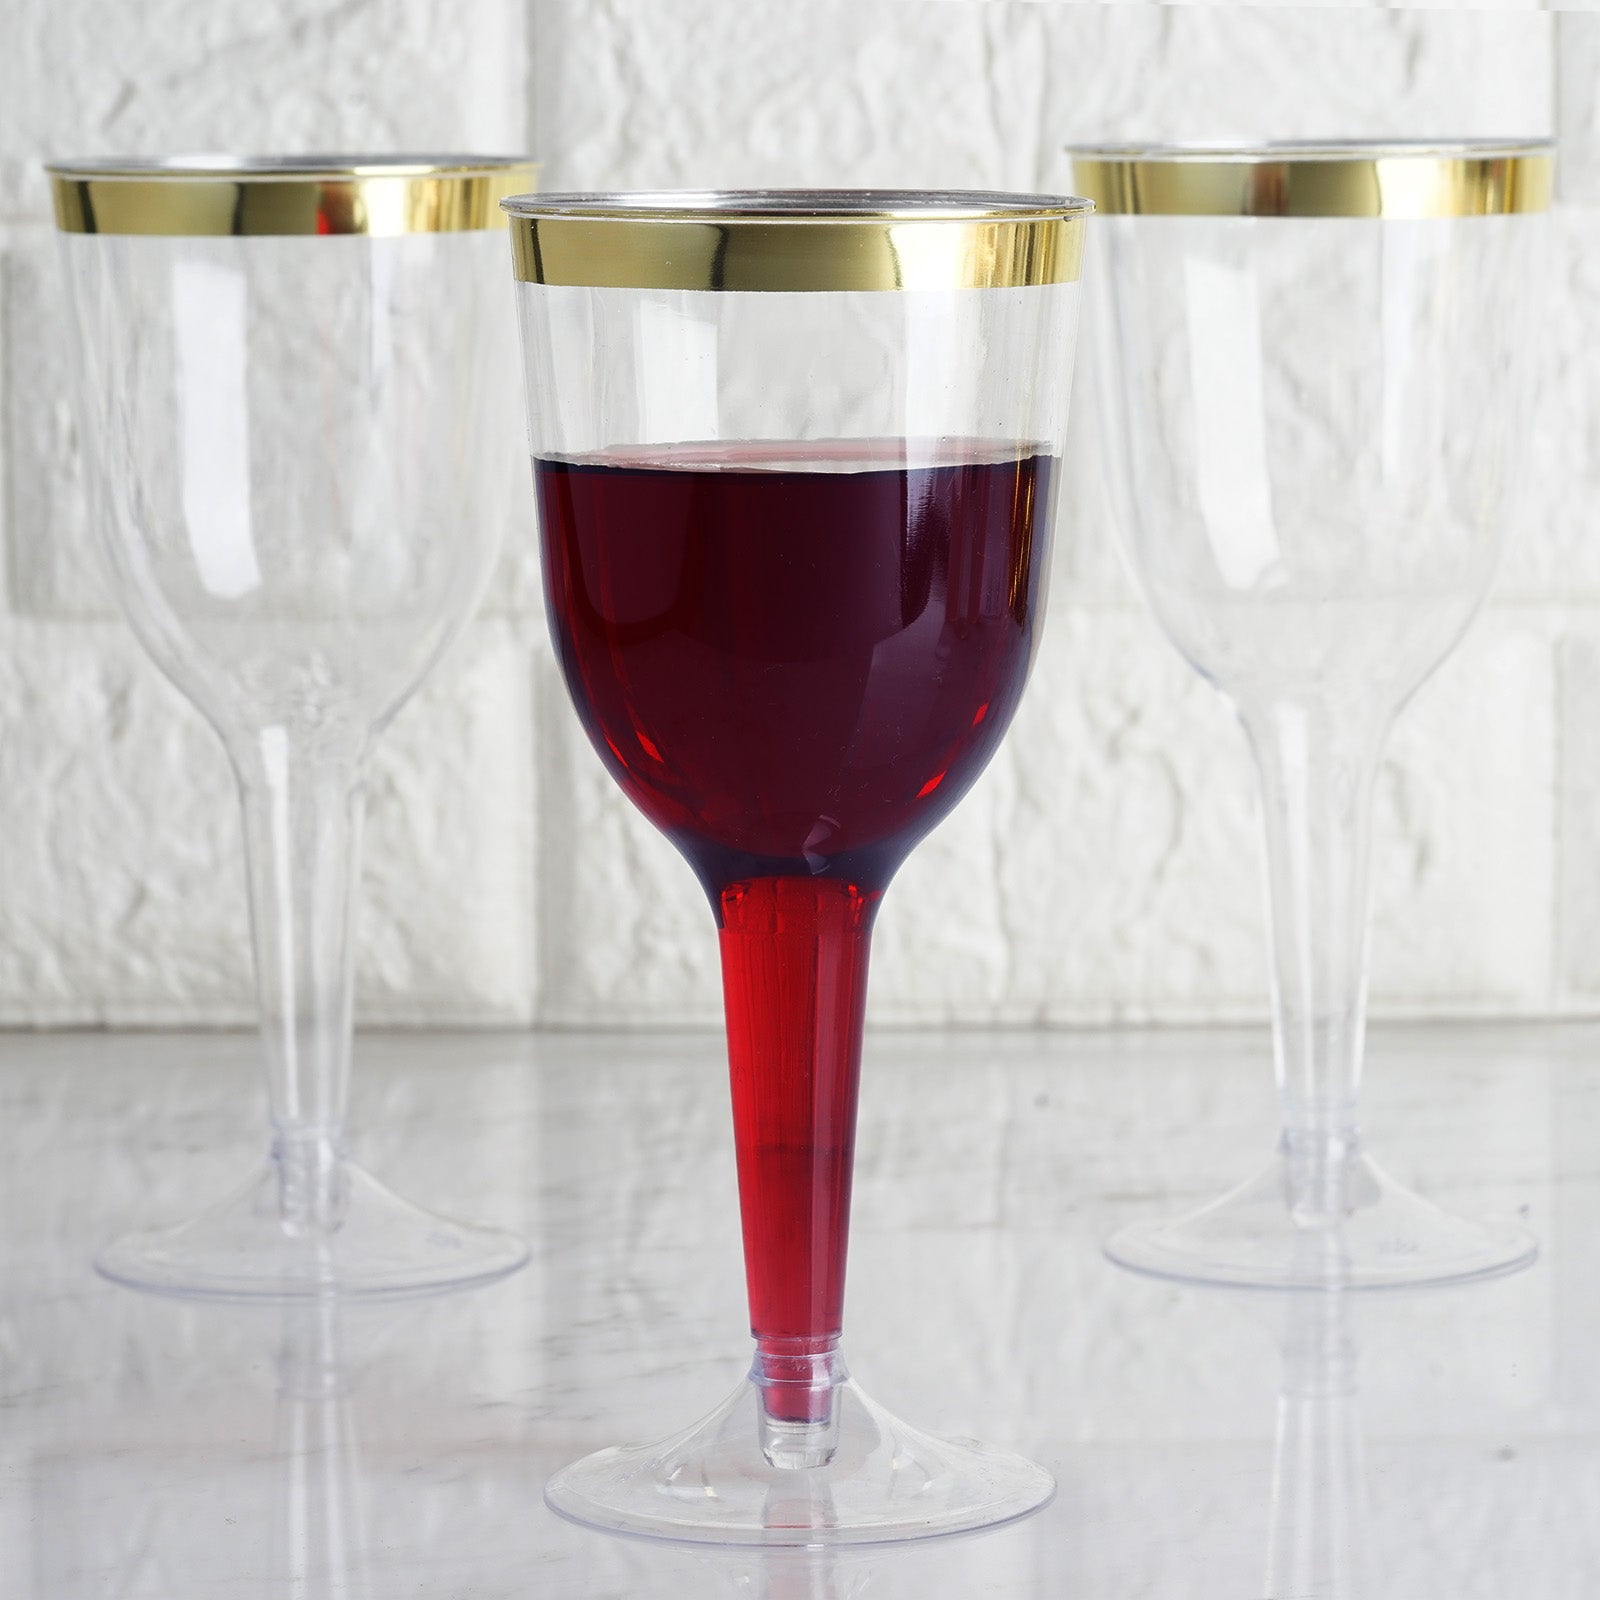 Premier Stylz Disposable Plastic Wine Glasses 5.5oz Clear 8CT